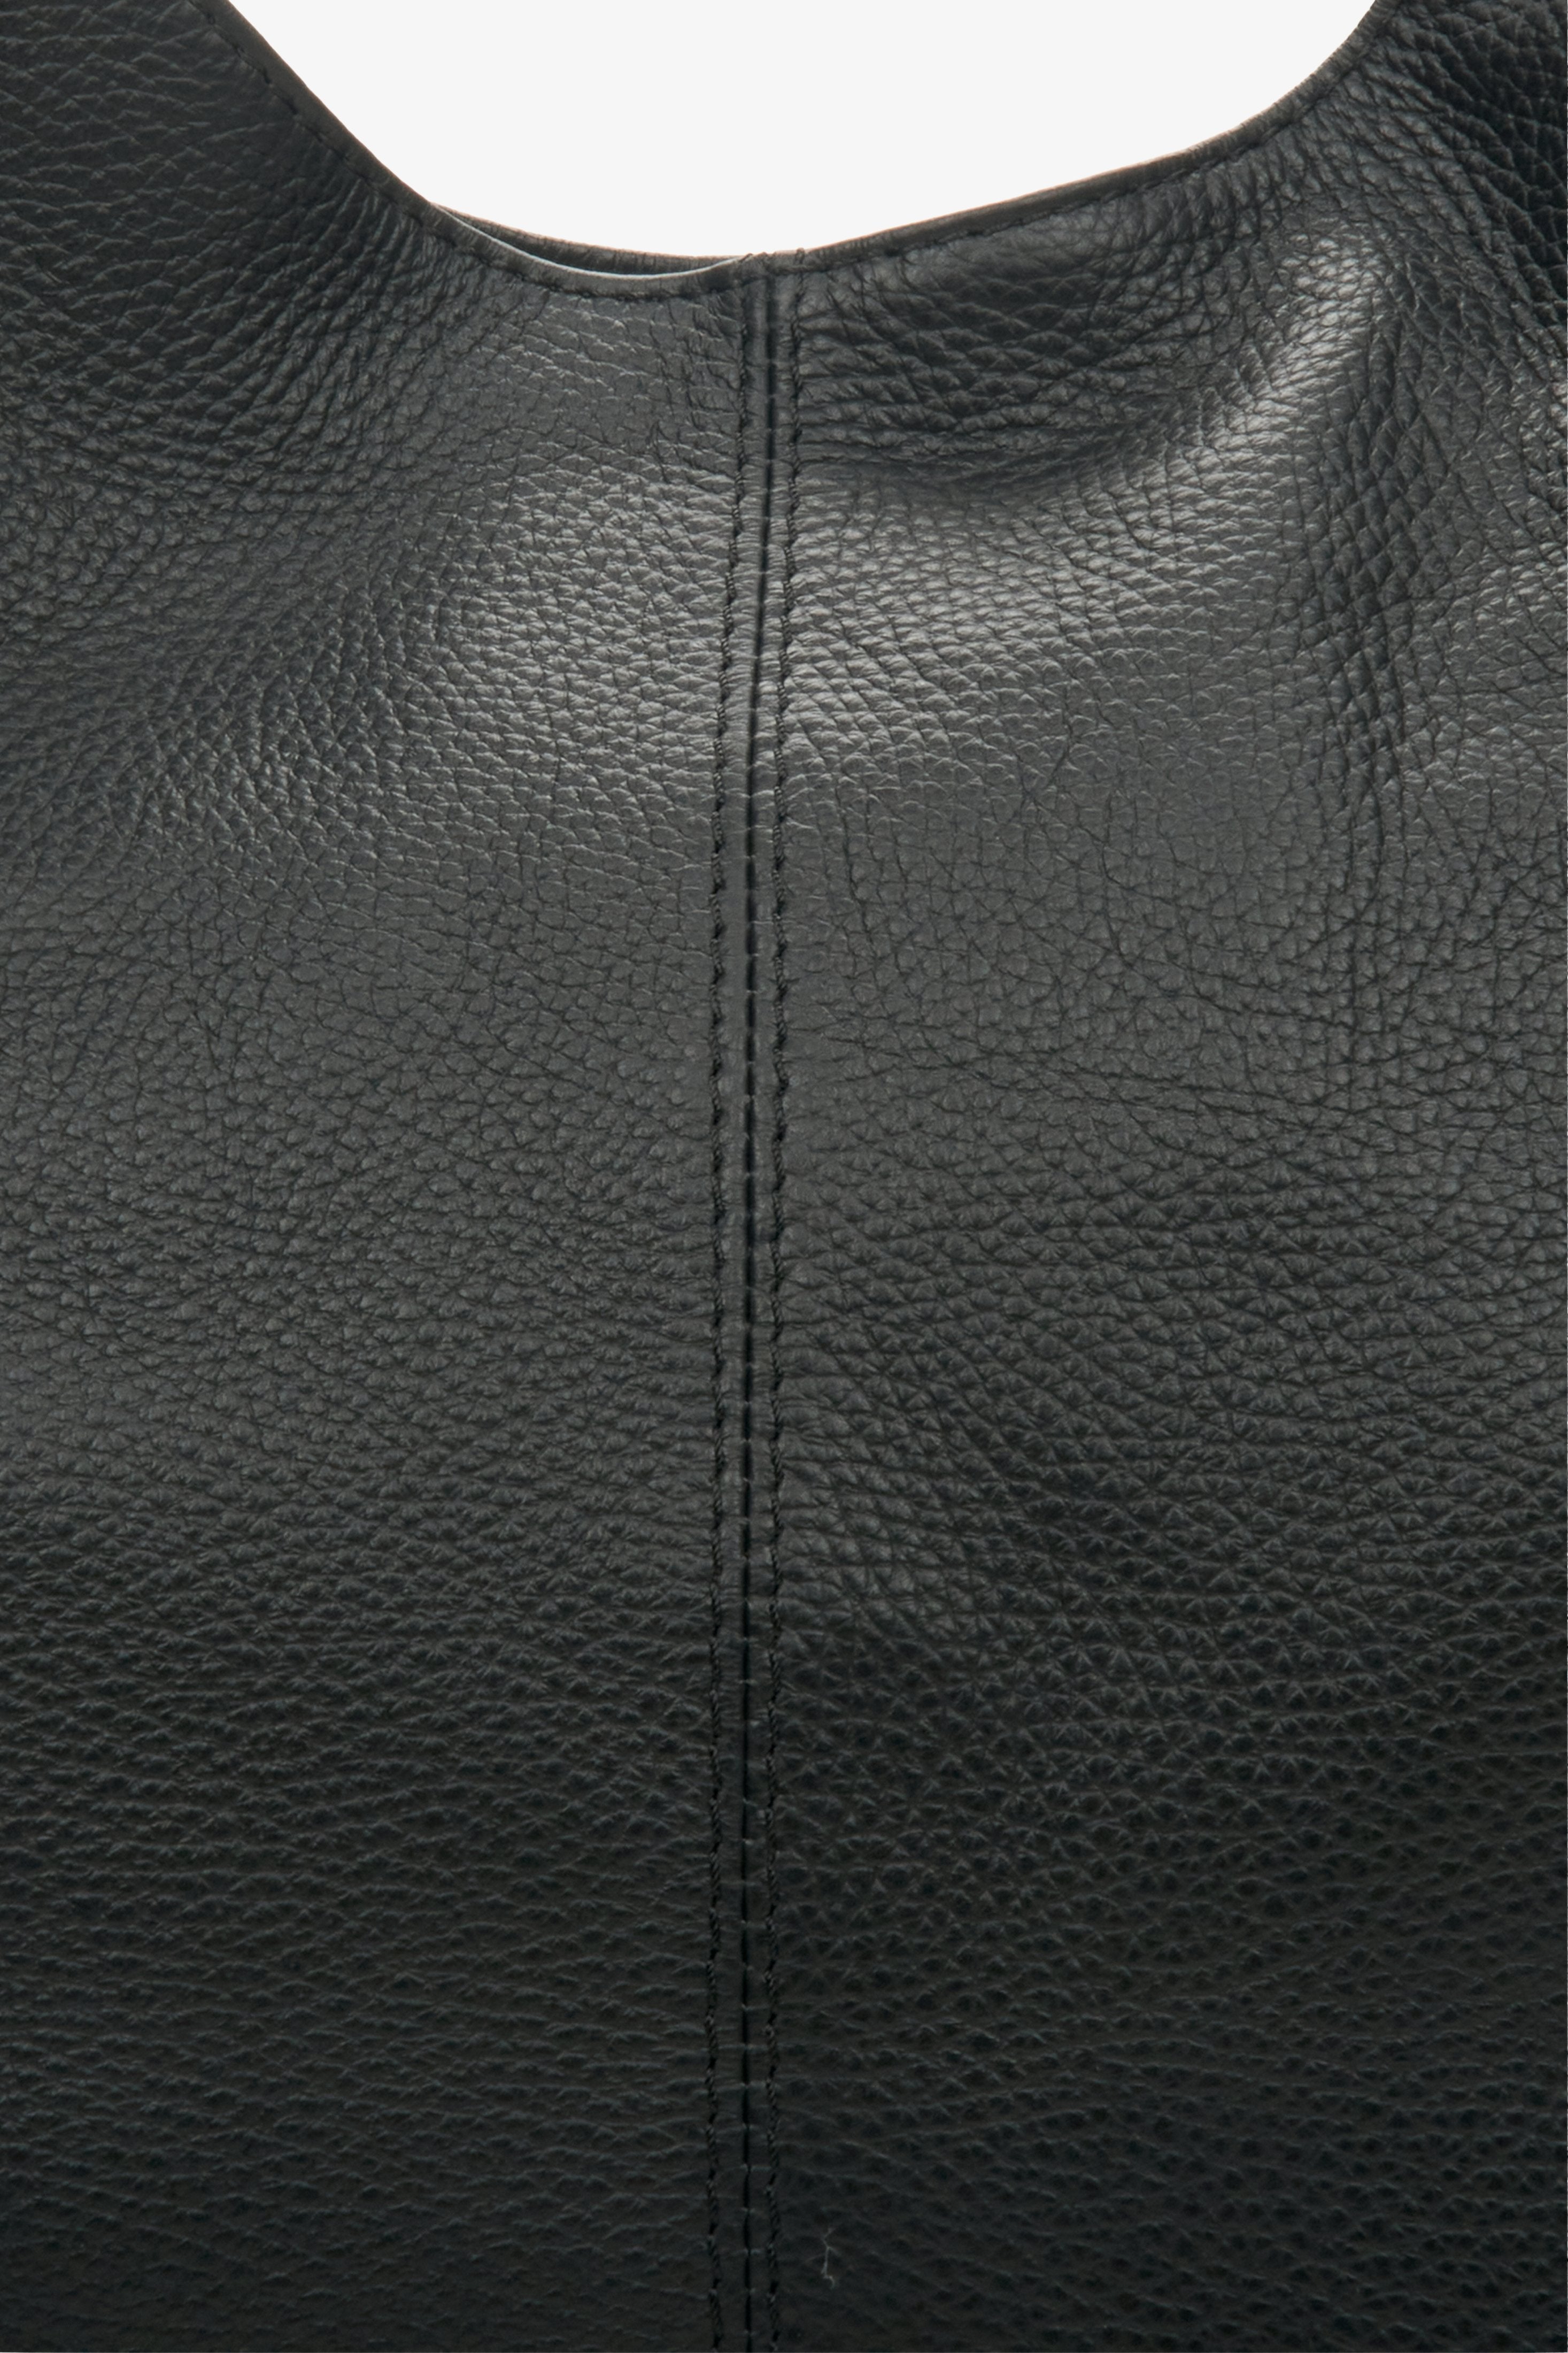 Skórzana shopperka damska Estro w kolorze czarnym - zbliżenie na detale.